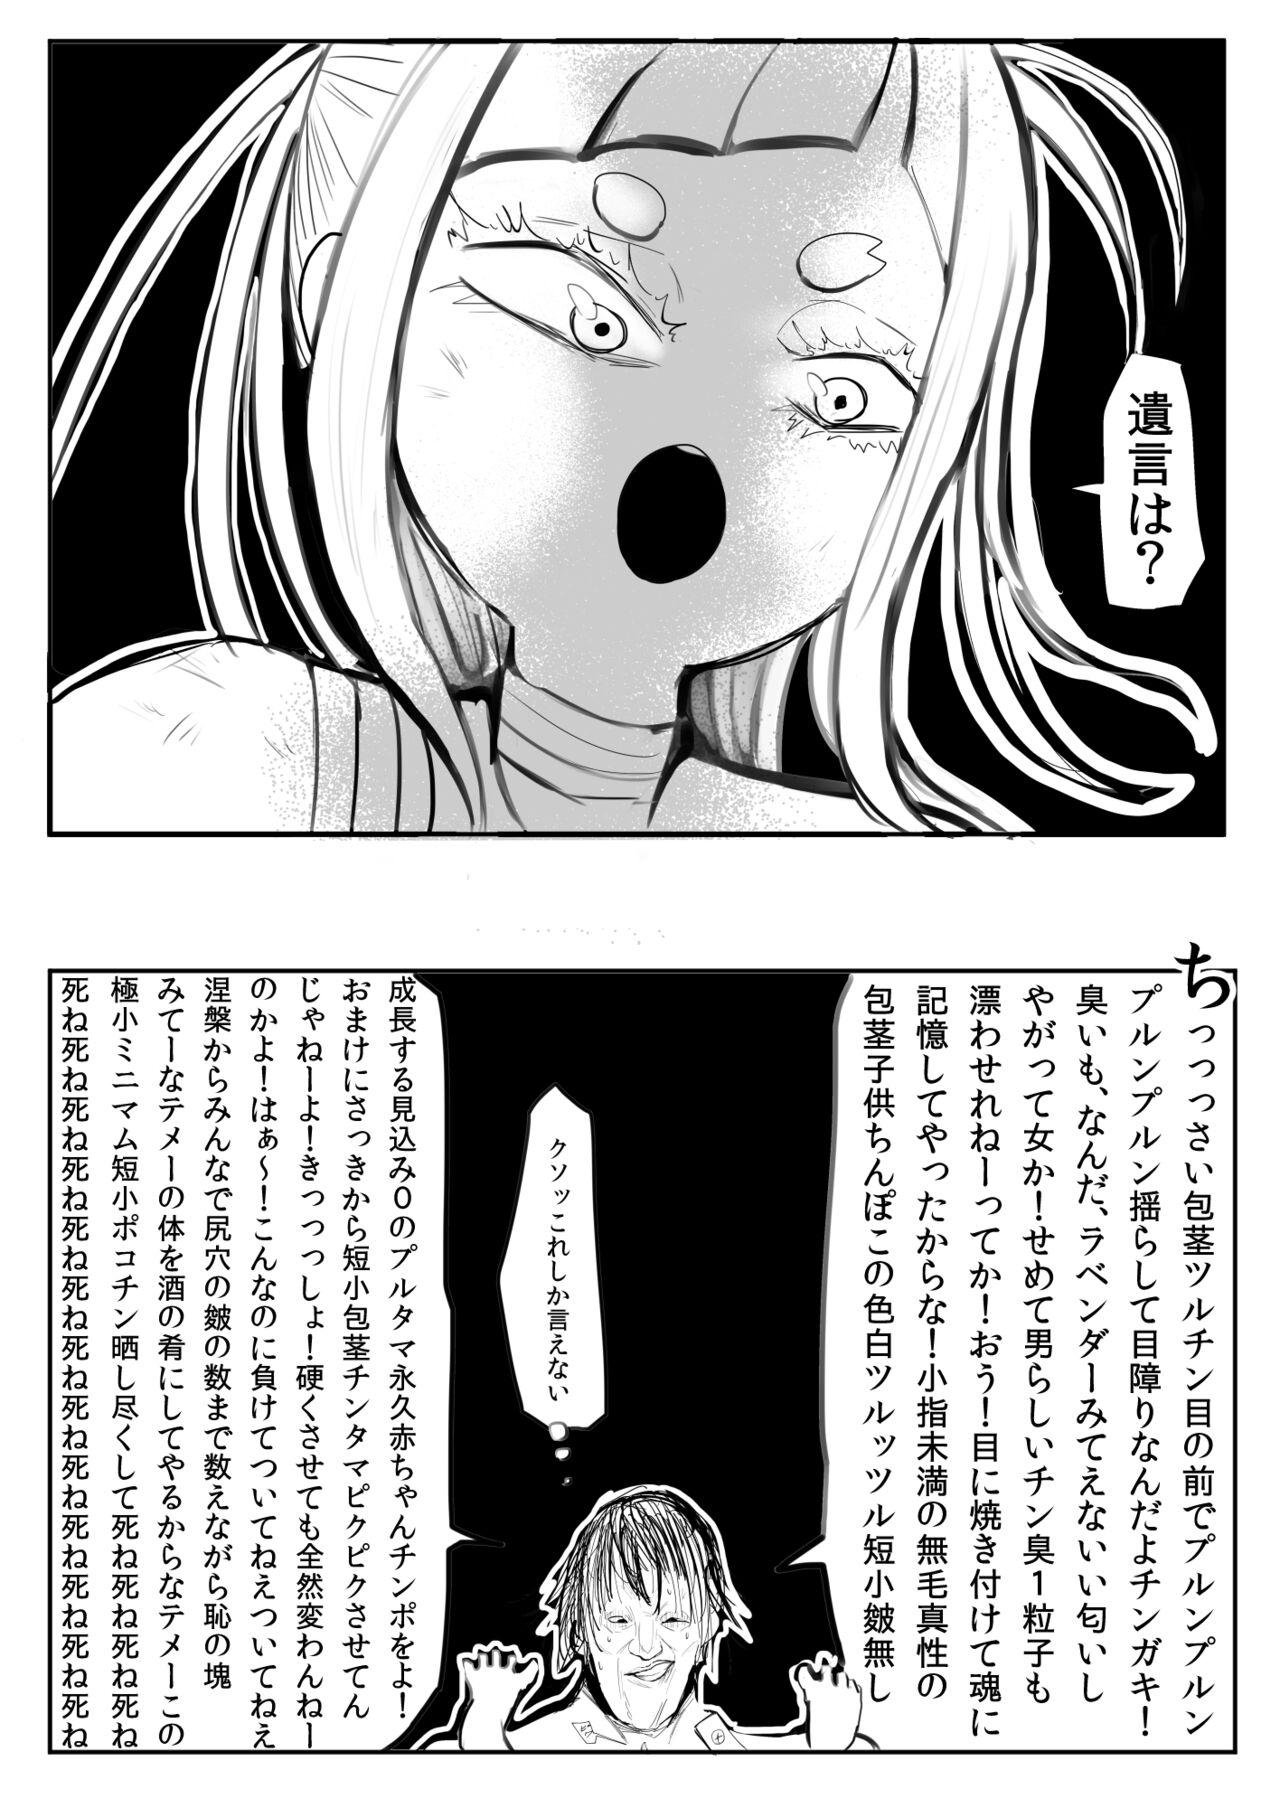 Otokonoko Manga 47